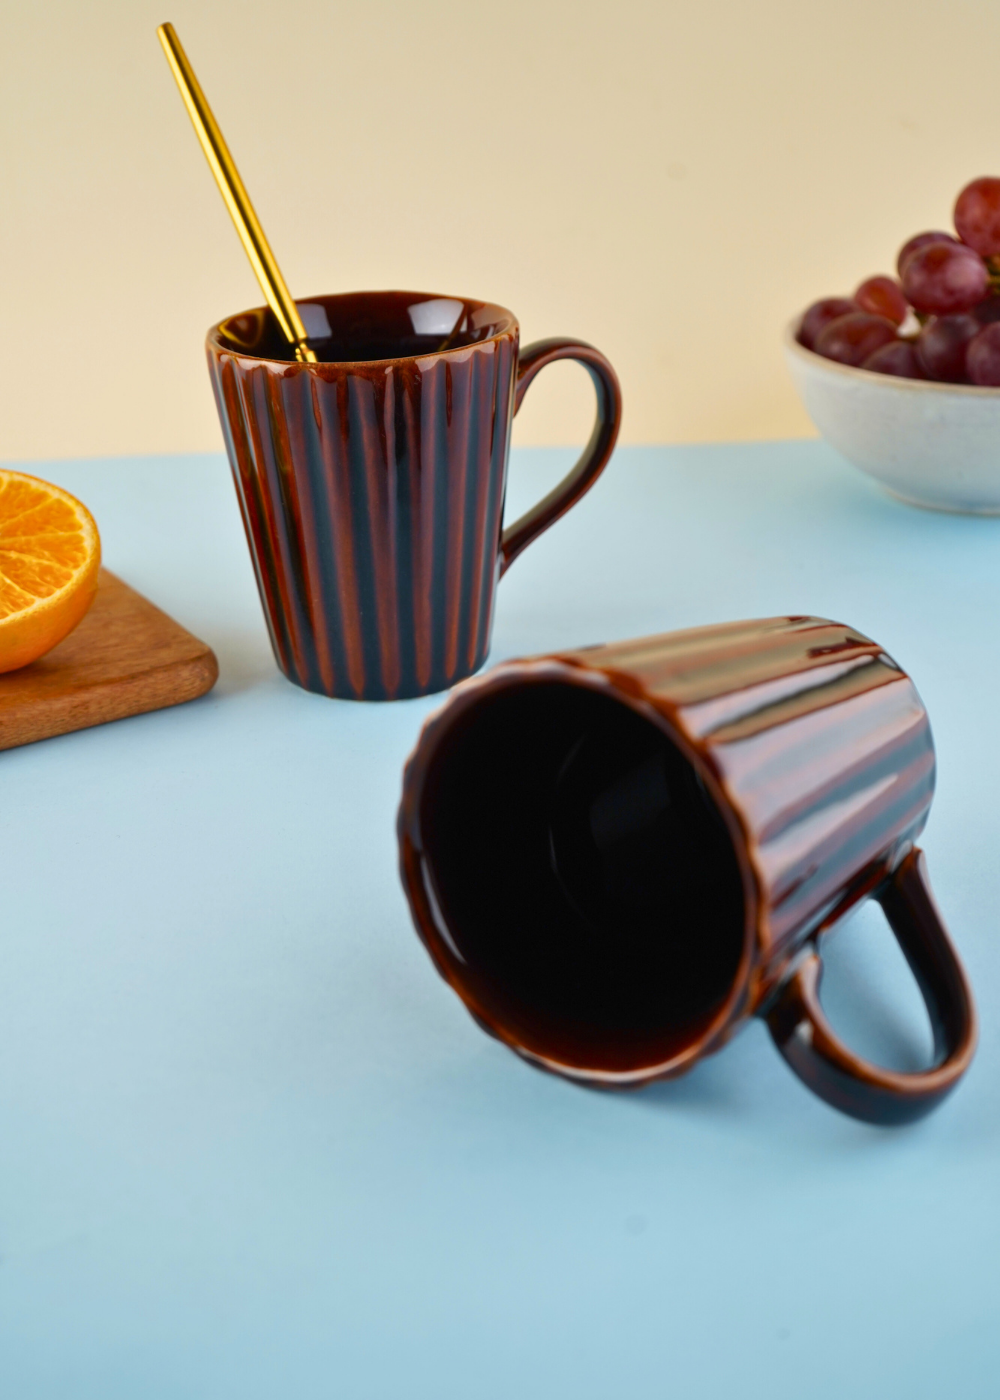 Basic brown coffee mug with adorable brown coffee mug